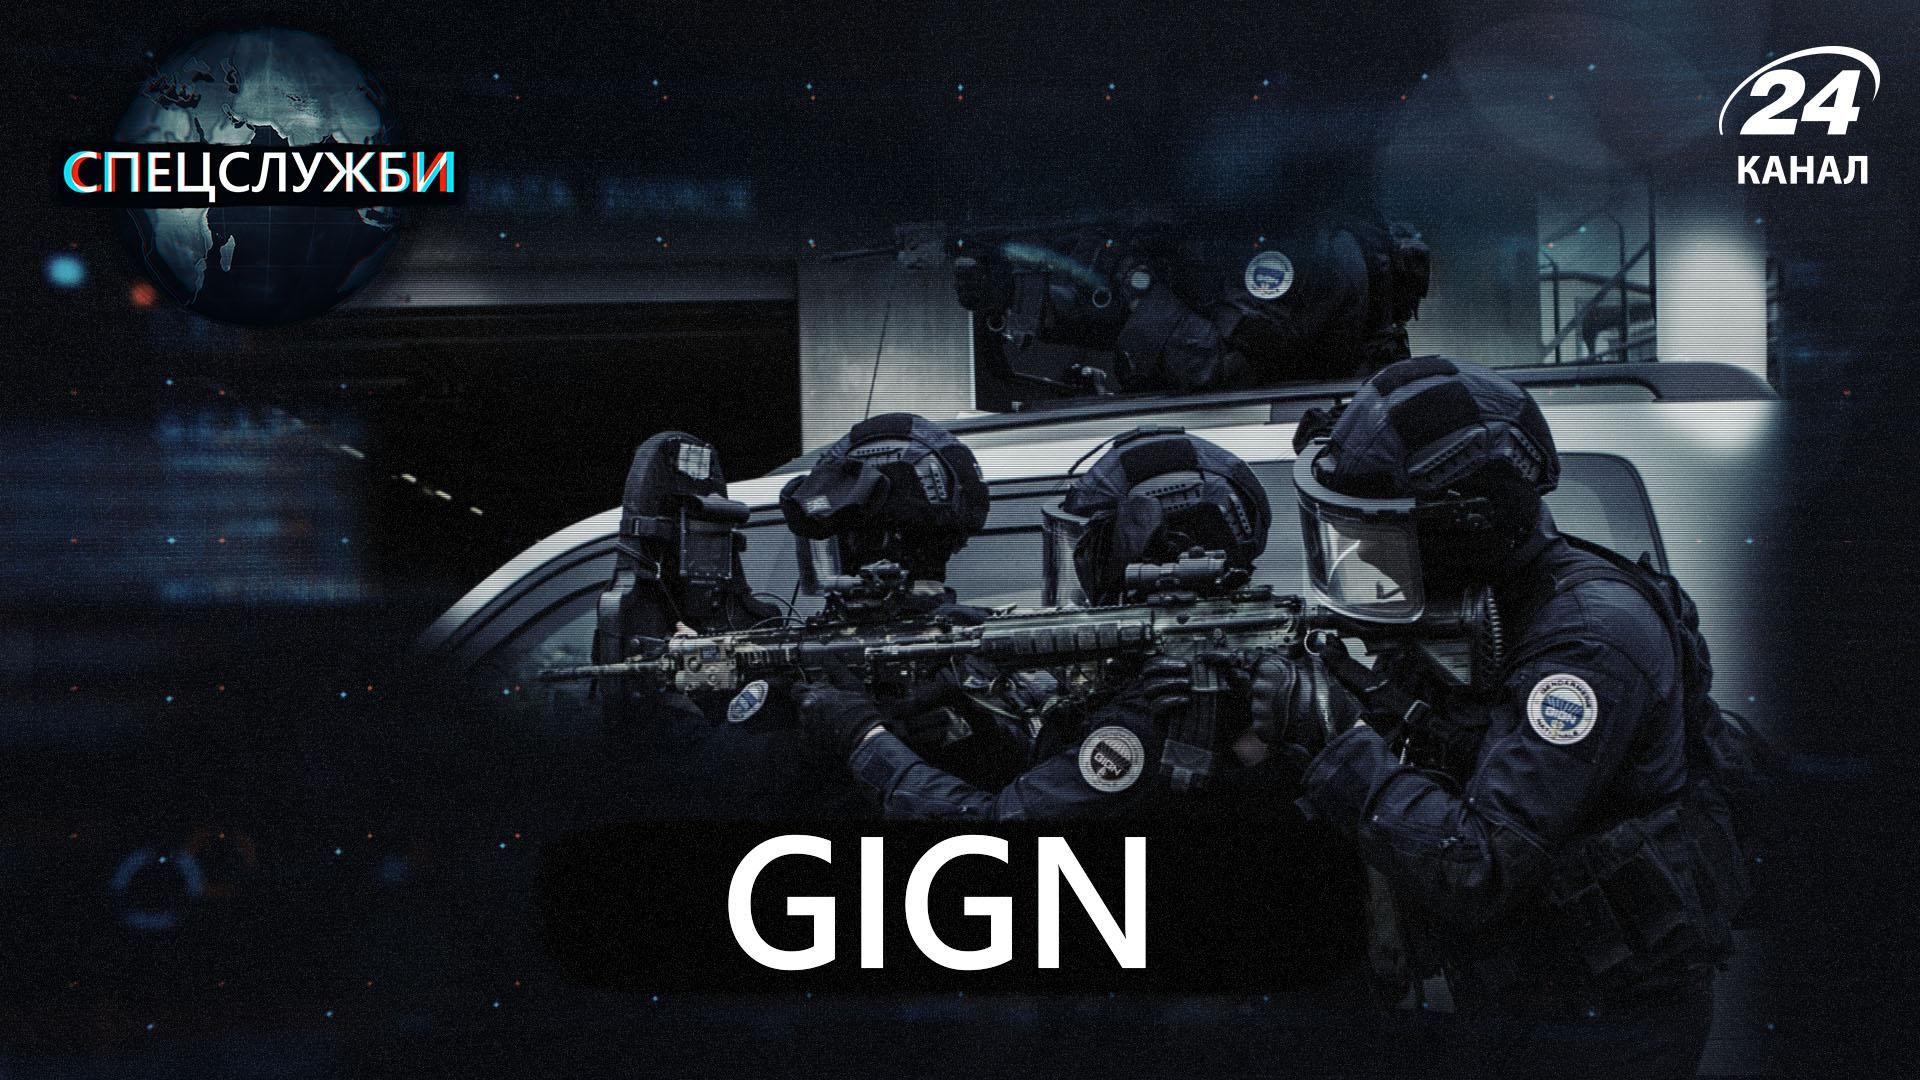 GIGN – спецподразделение, которое борется с терроризмом